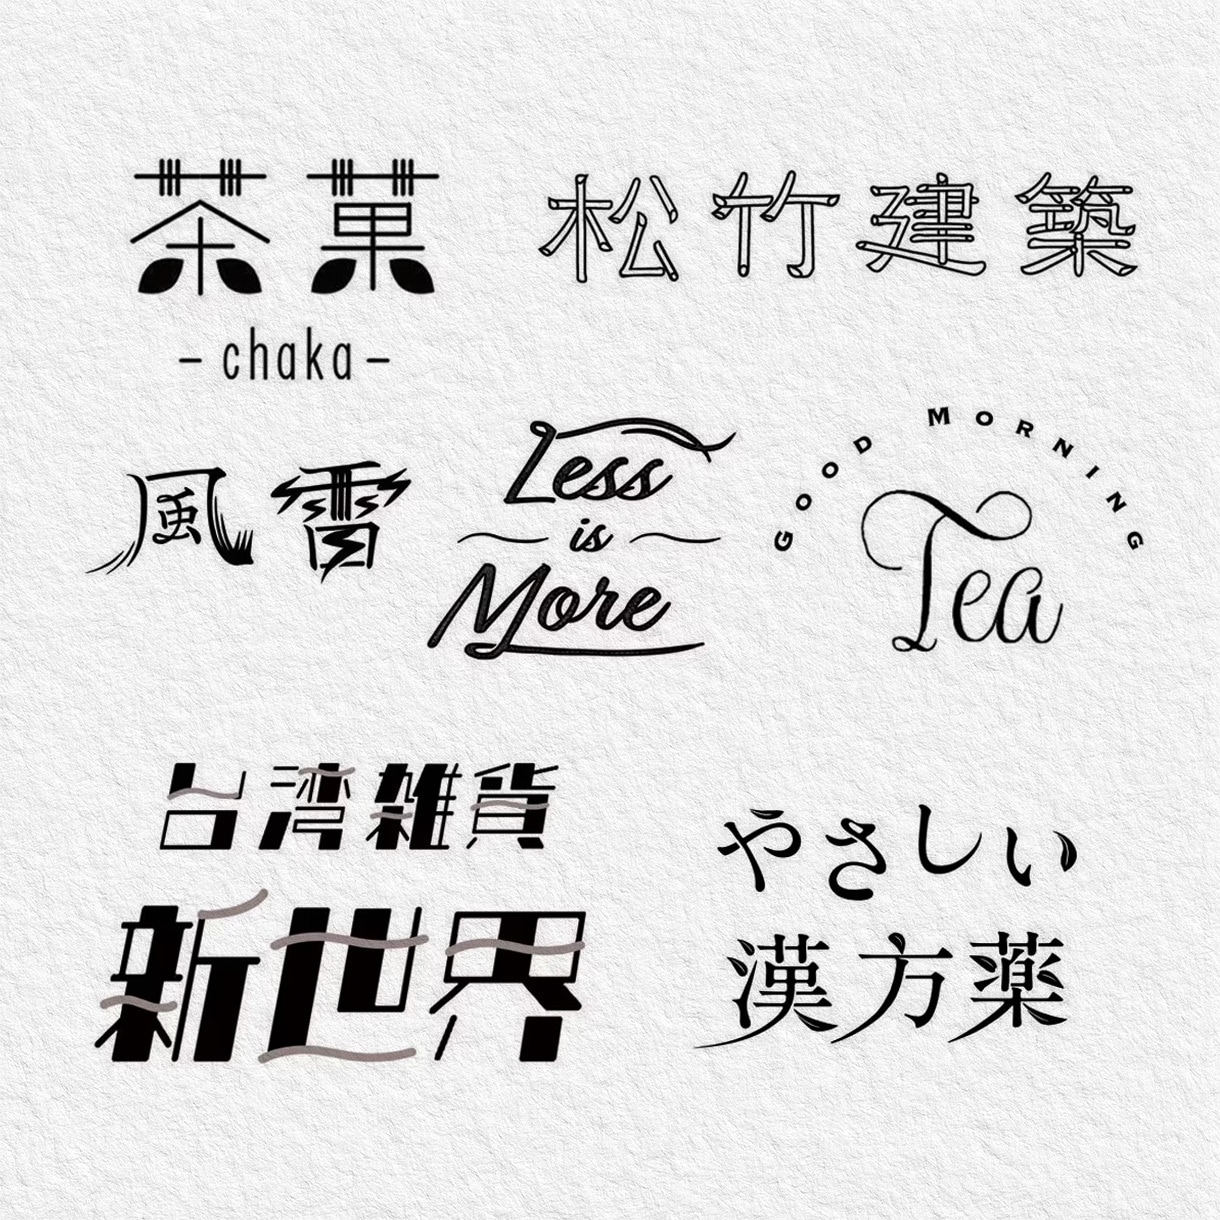 日本字・英文字ロゴ、タイトル文字を作成します ポップ・モダン・レトロ・かわいい系が得意です。